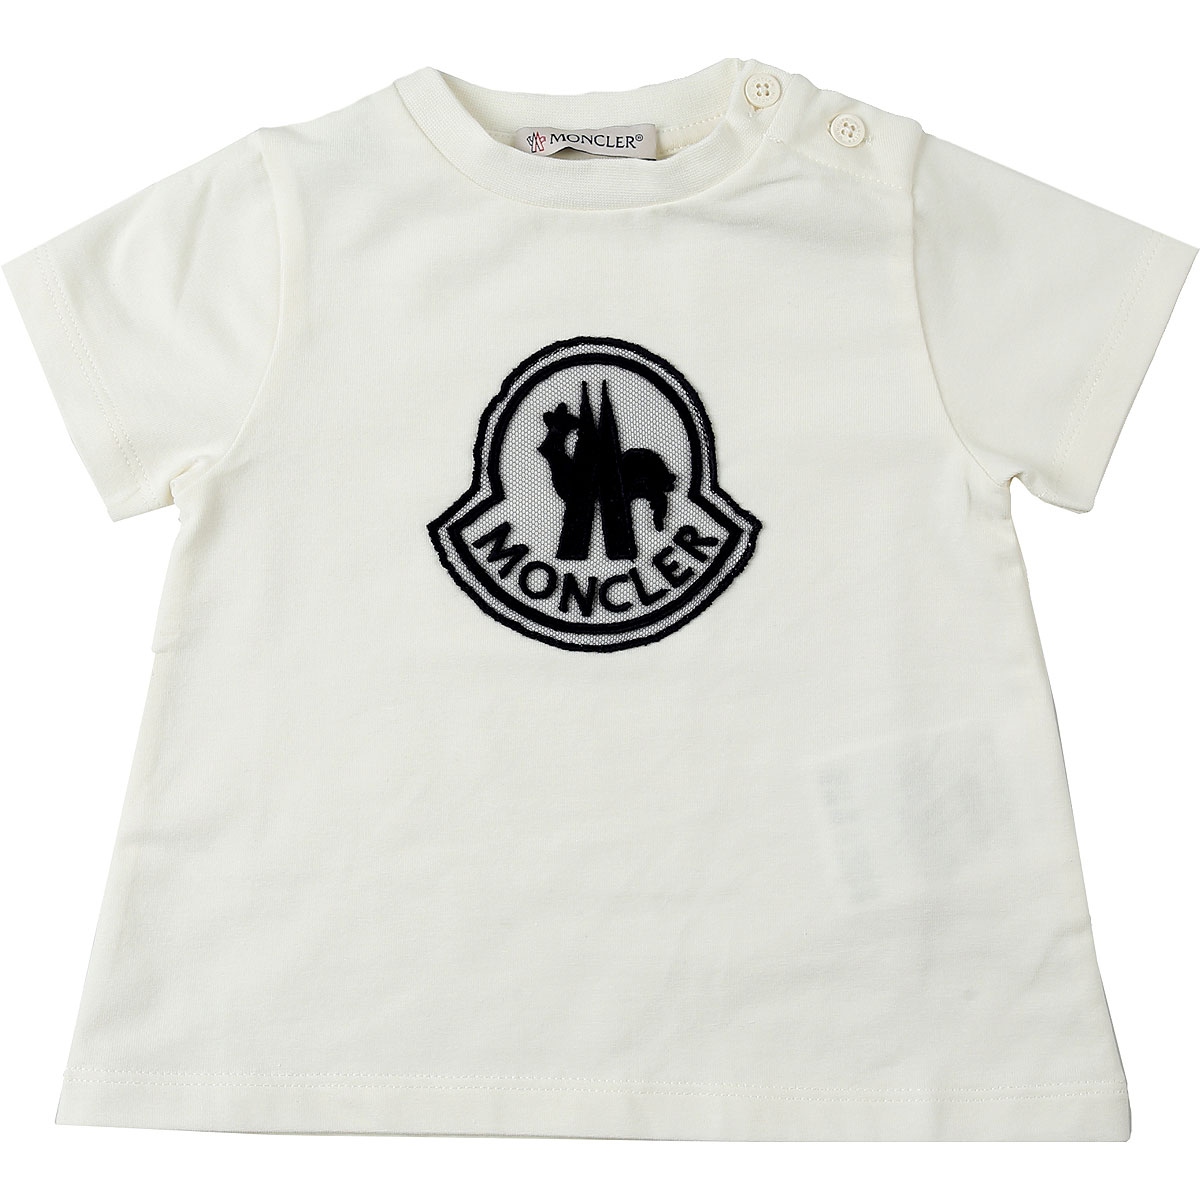 Moncler Baby T-Shirt für Mädchen Günstig im Outlet Sale, Weiss, Baumwolle, 2017, 12M 18M 24M